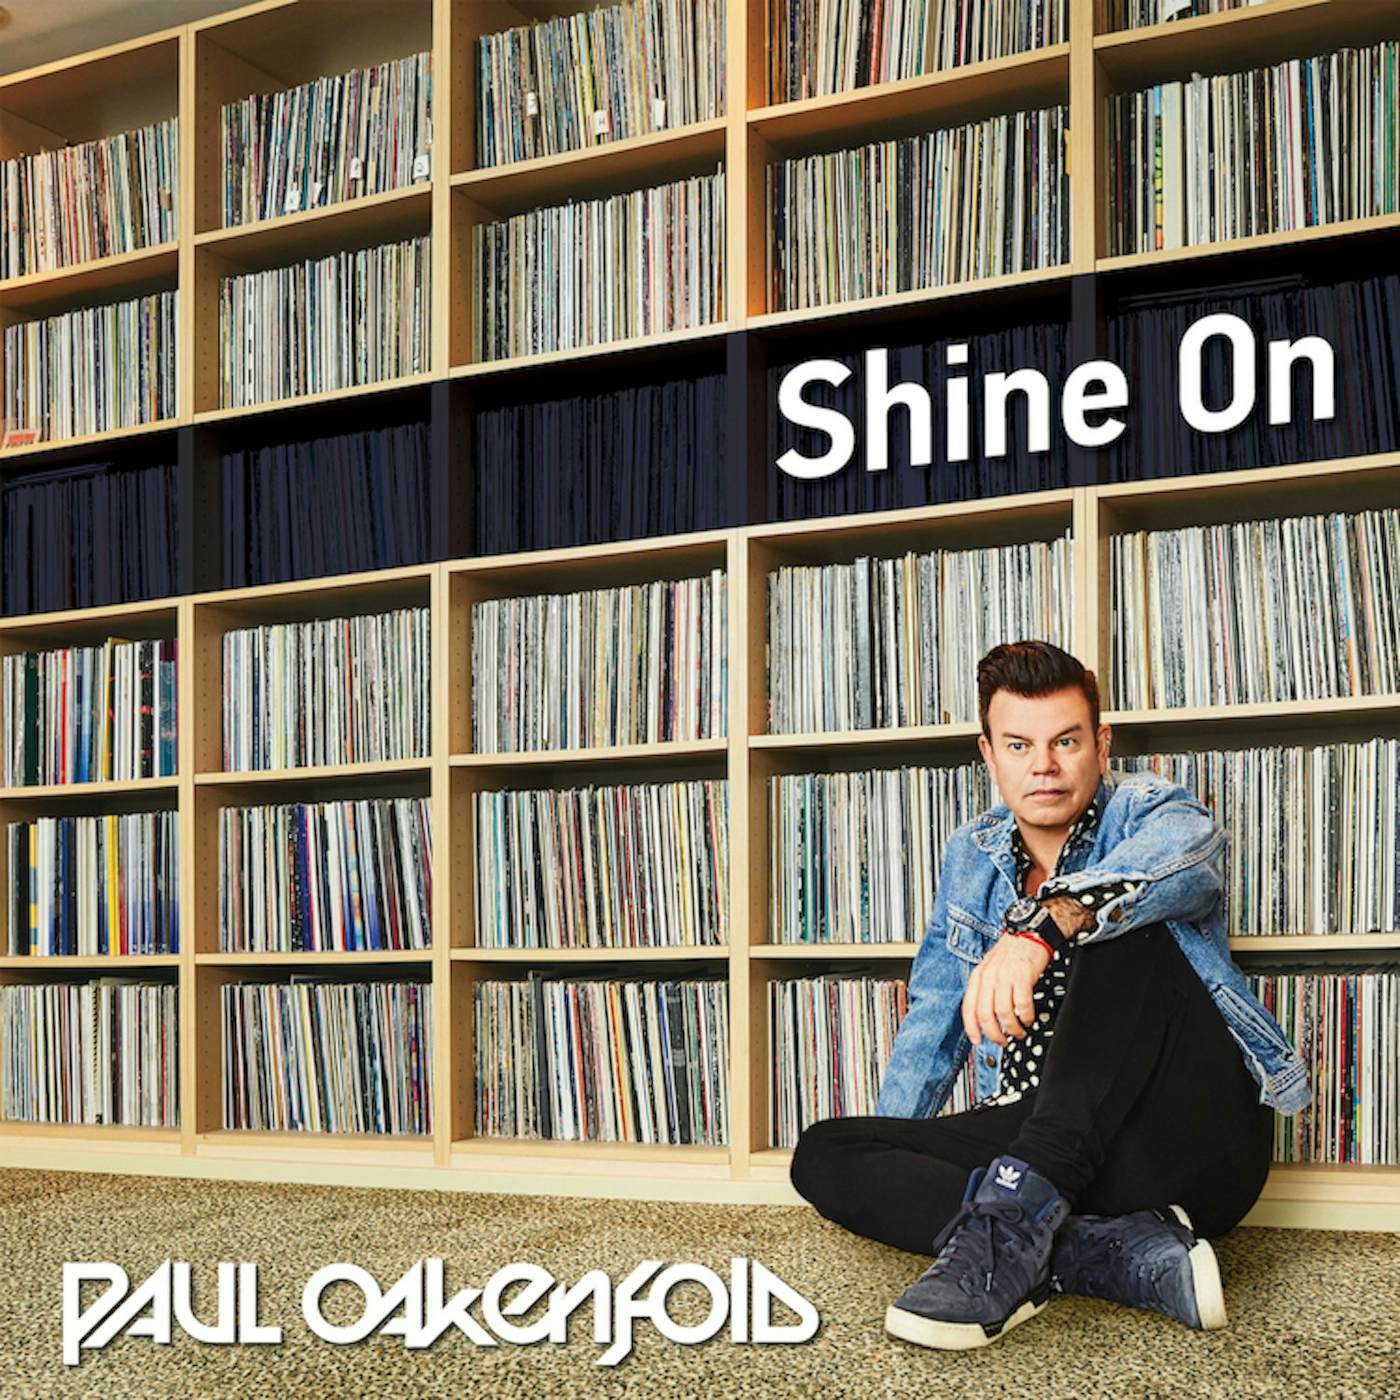 Paul Oakenfold - Shine On